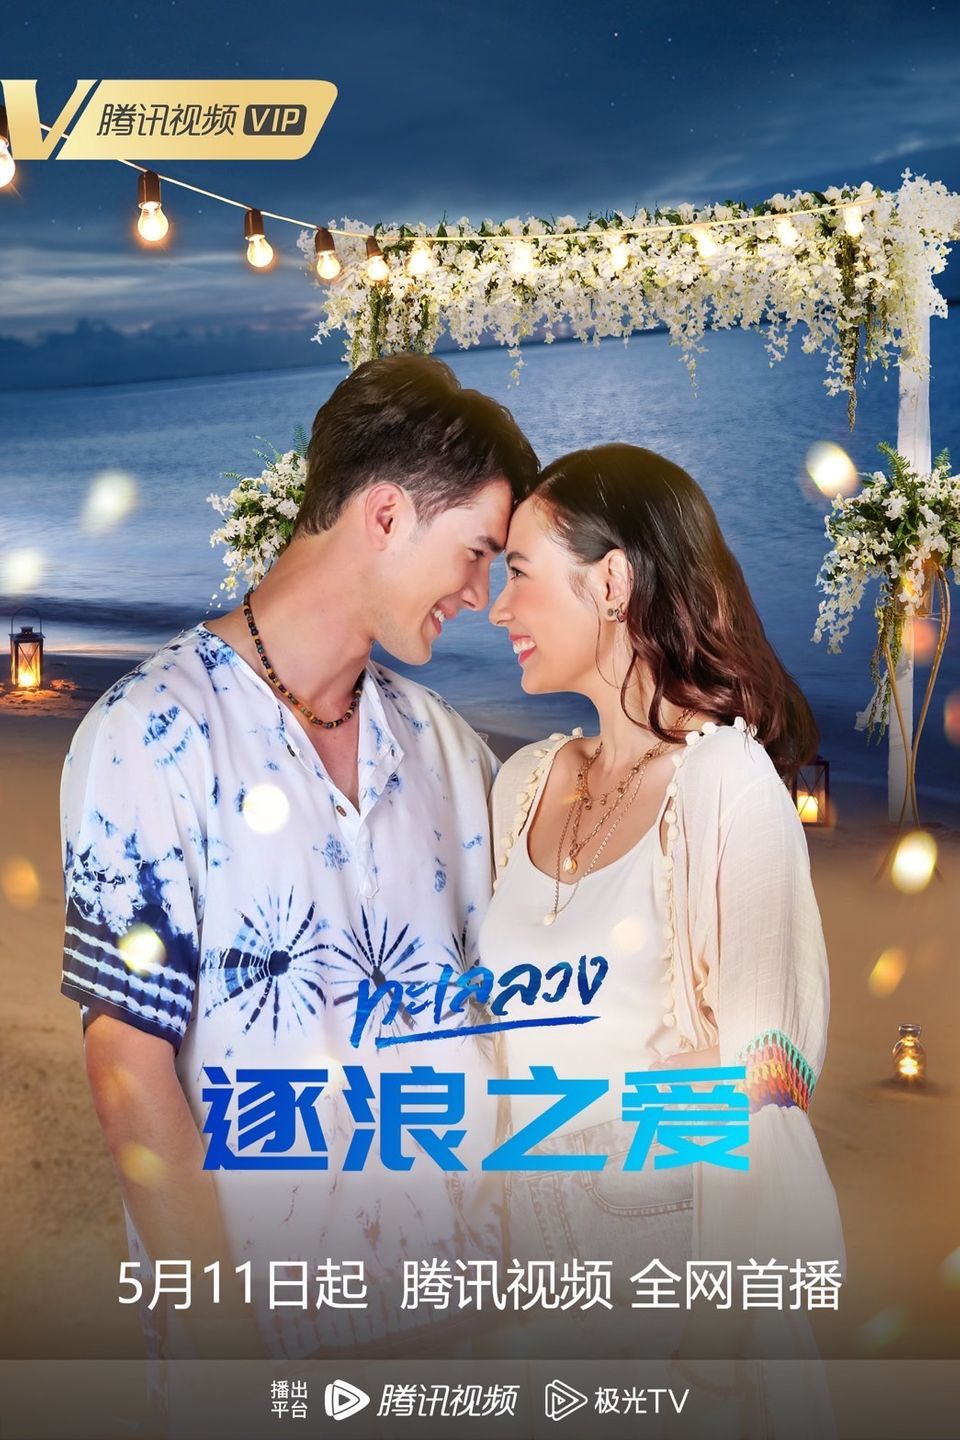 “ทะเลลวง” ฮอตที่จีนต่อเนื่อง ลงออนไลน์ดัง Tencent – iQIYI – BesTV